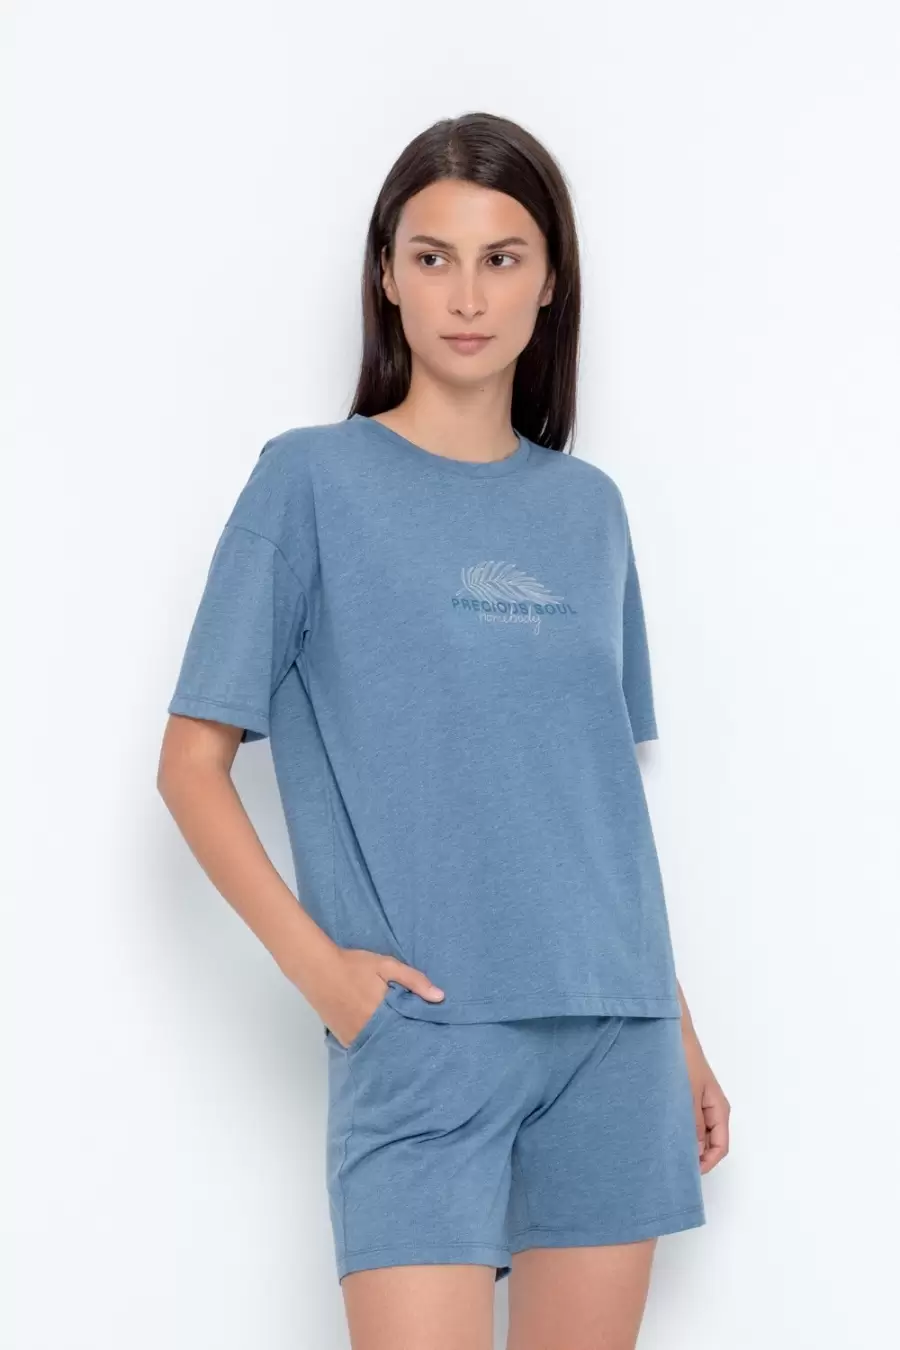 Very Neat Е30051 Тропическая, женская футболка (изображение 1)